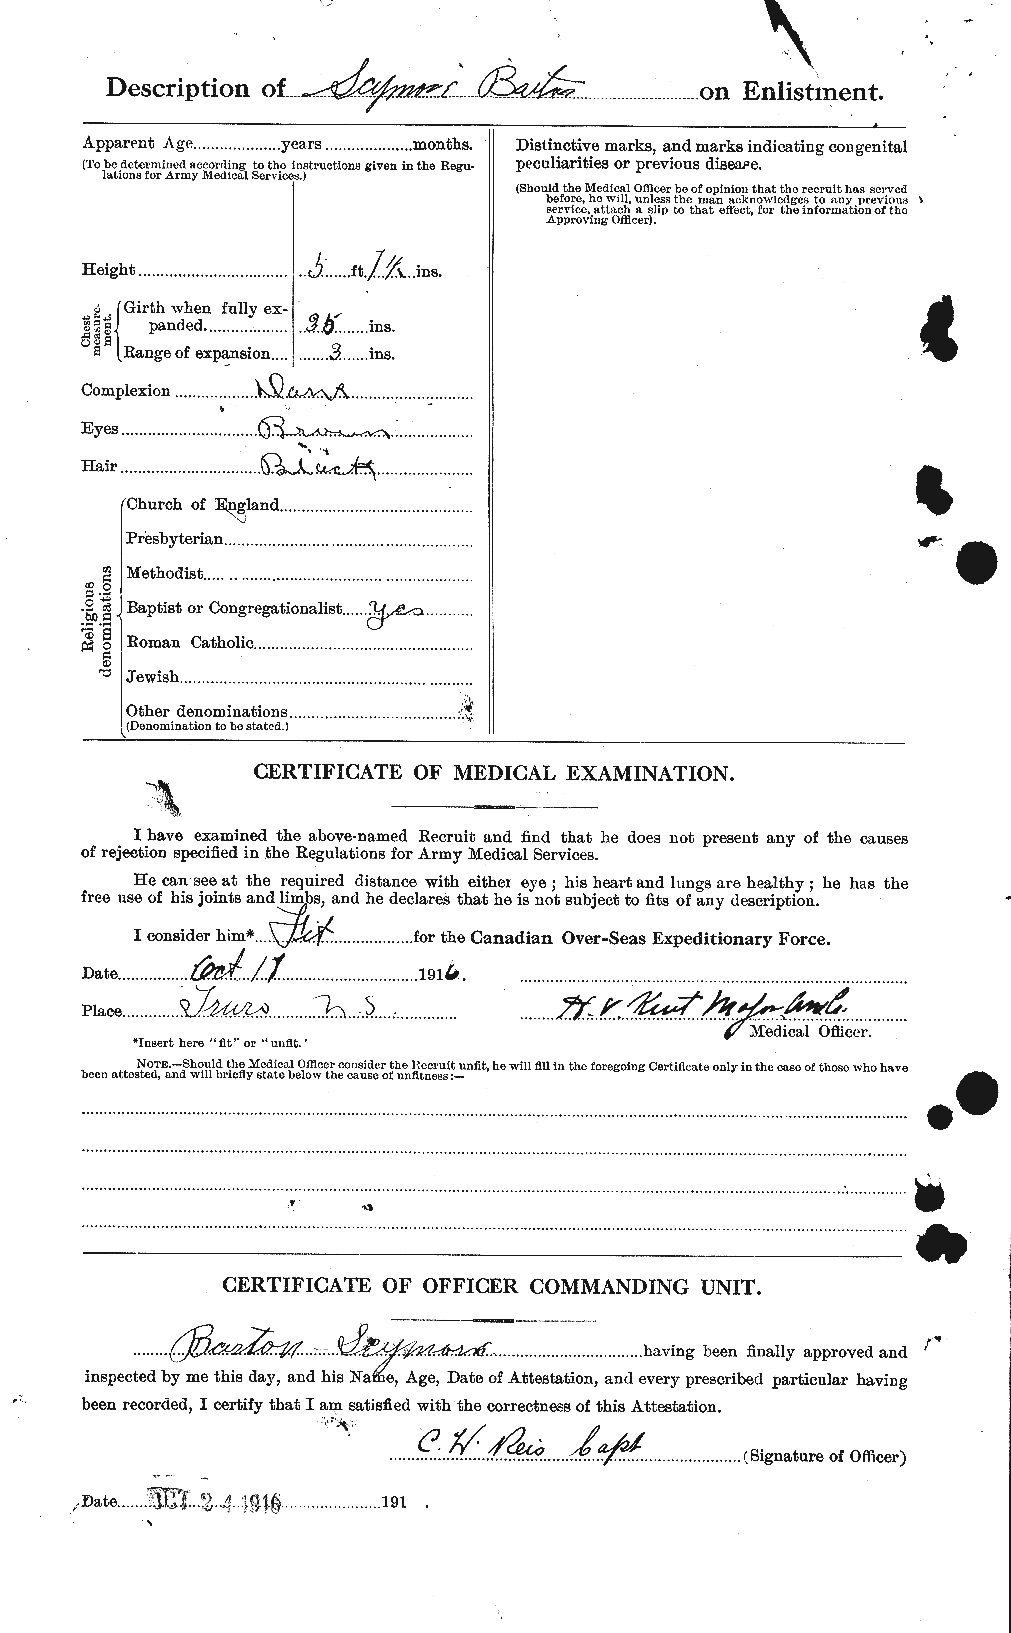 Dossiers du Personnel de la Première Guerre mondiale - CEC 221336b